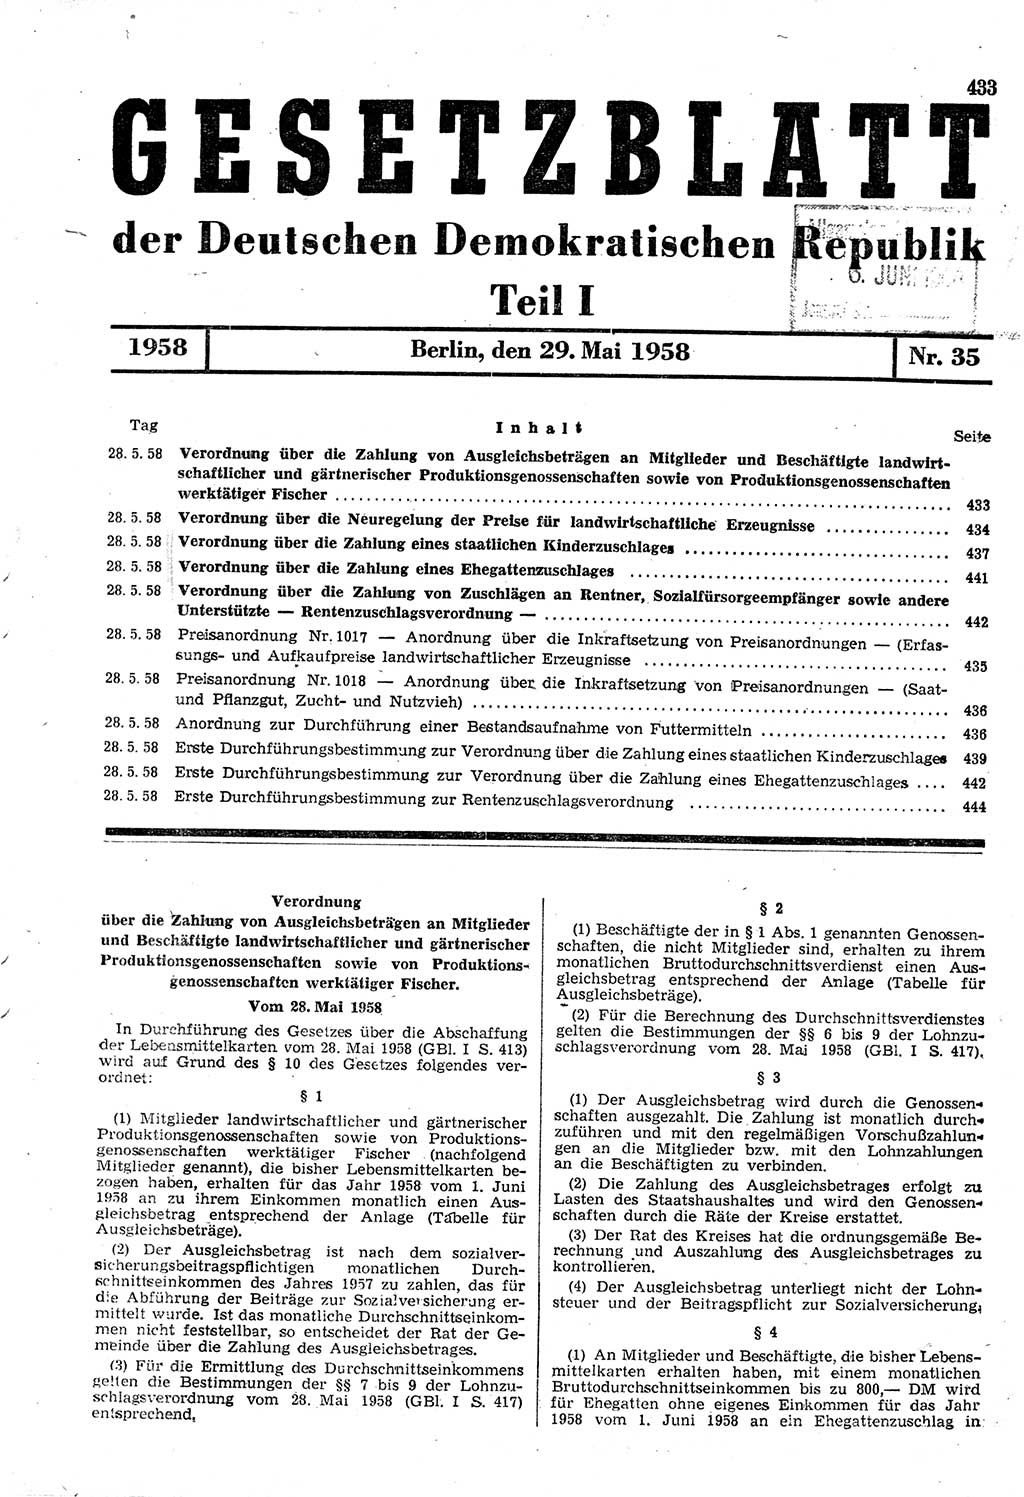 Gesetzblatt (GBl.) der Deutschen Demokratischen Republik (DDR) Teil Ⅰ 1958, Seite 433 (GBl. DDR Ⅰ 1958, S. 433)